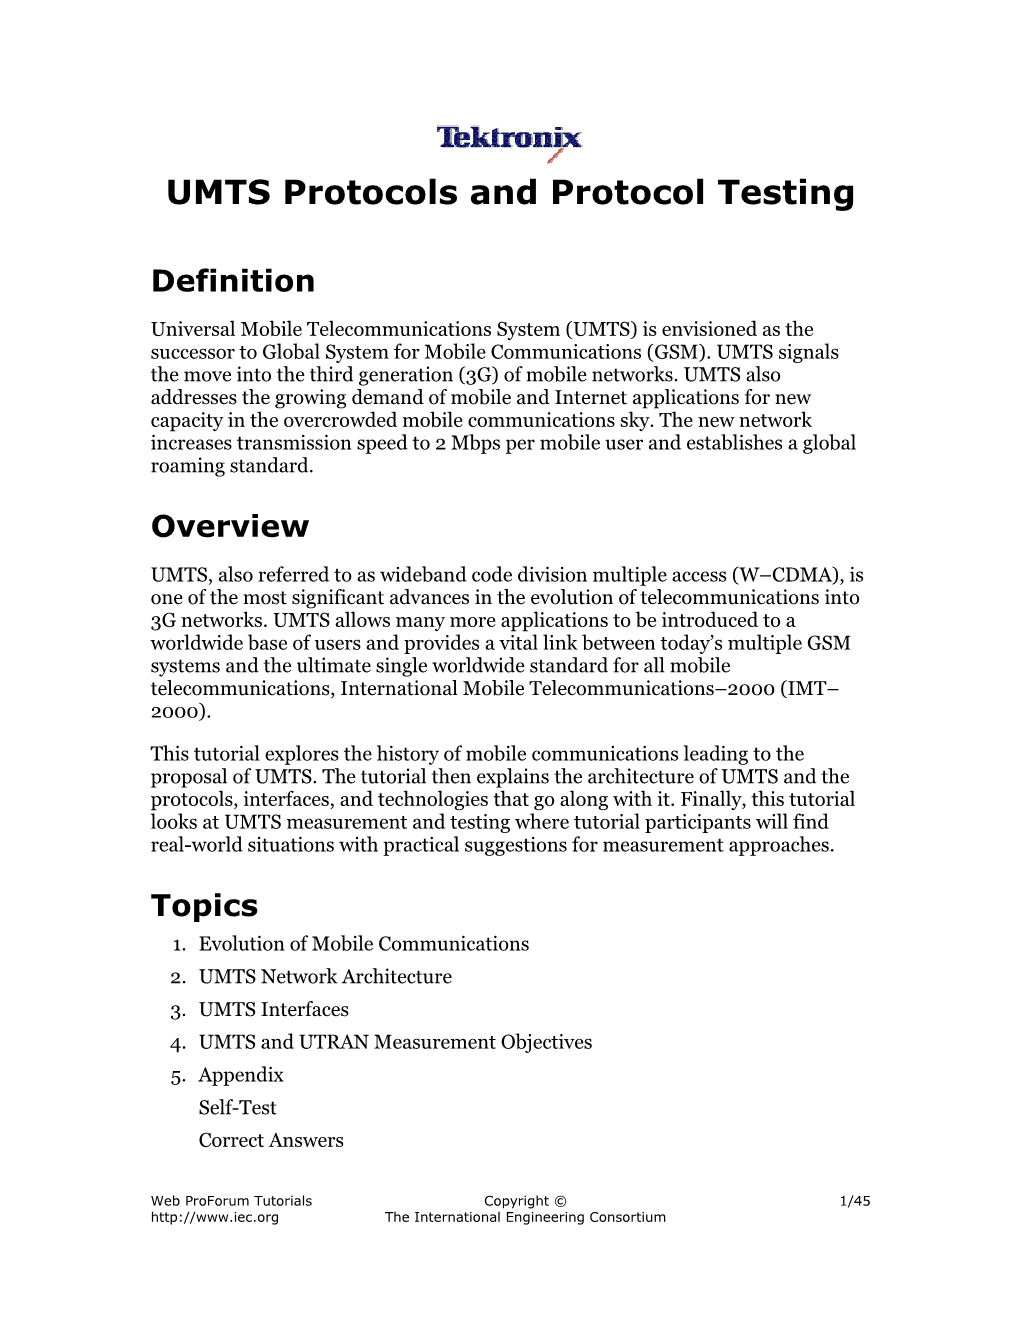 UMTS Protocols and Protocol Testing